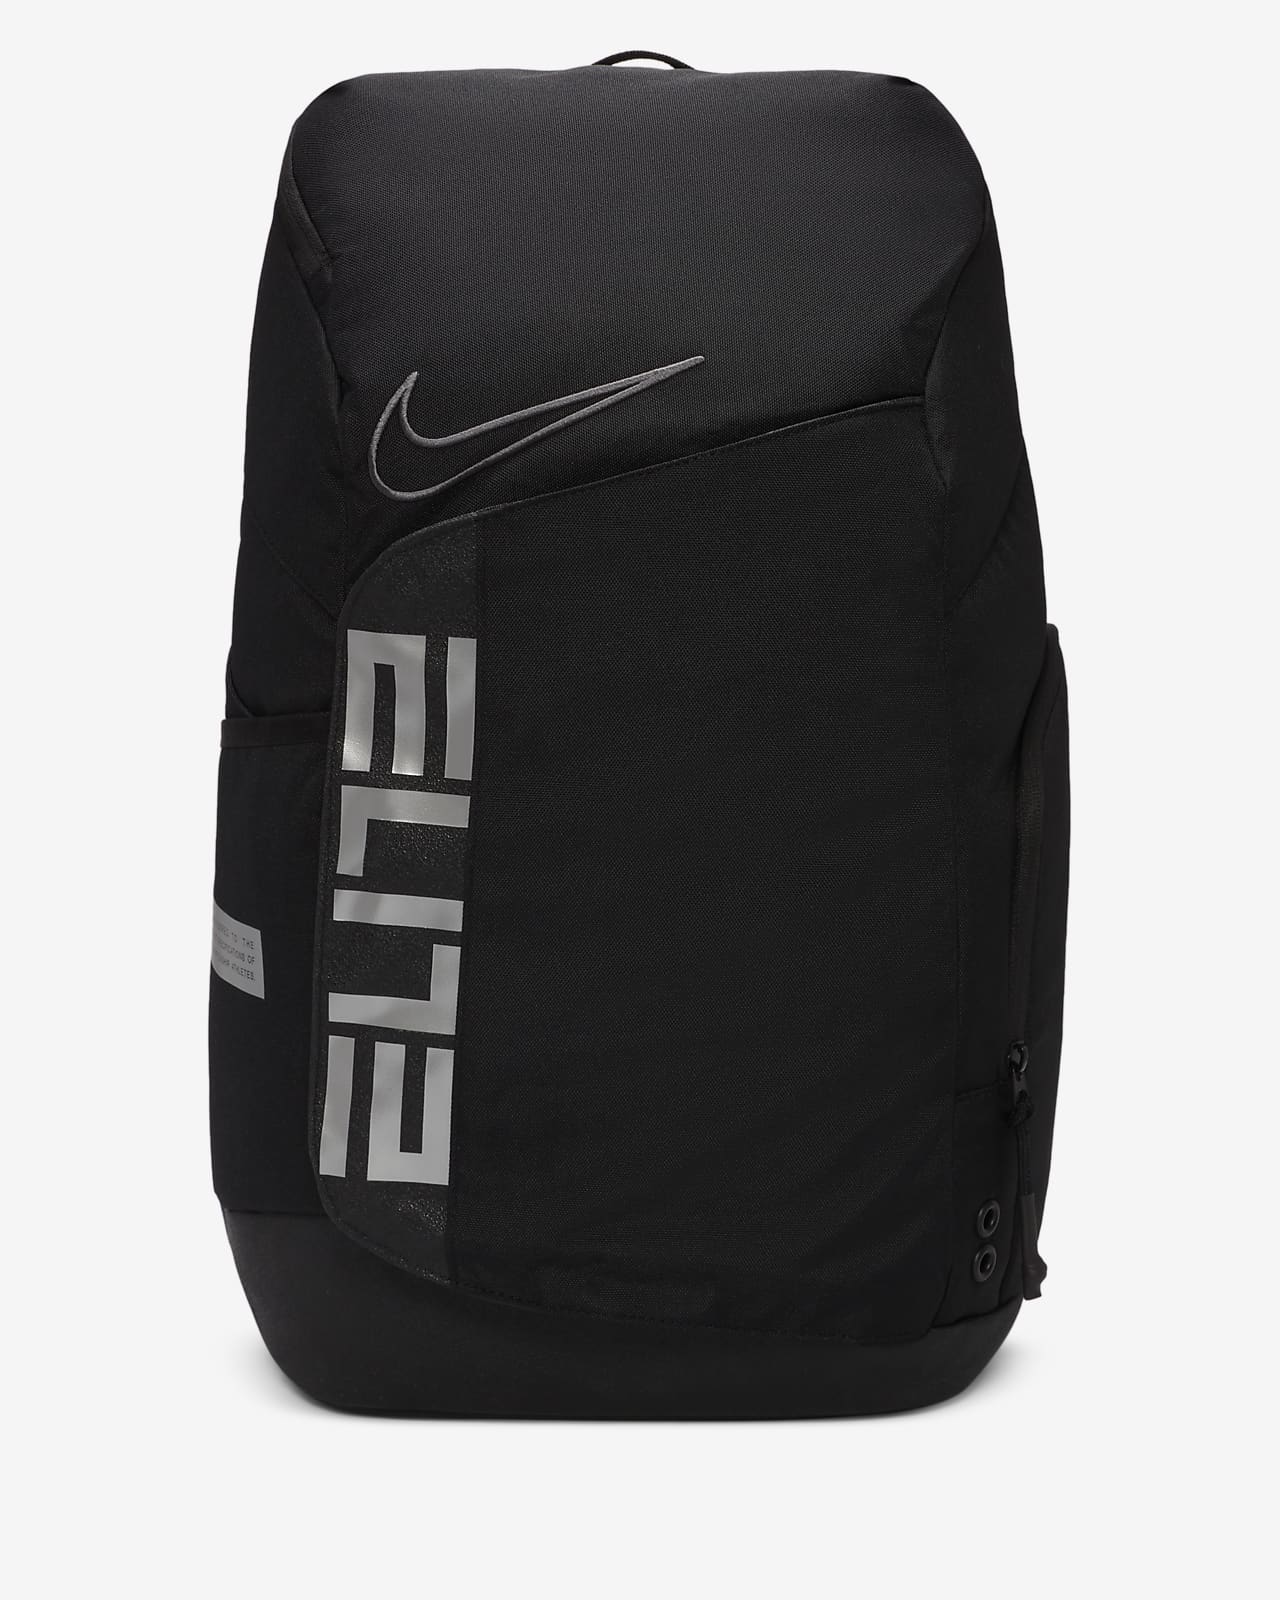 Nike Elite Pro Basketball Backpack (32L). Nike CA